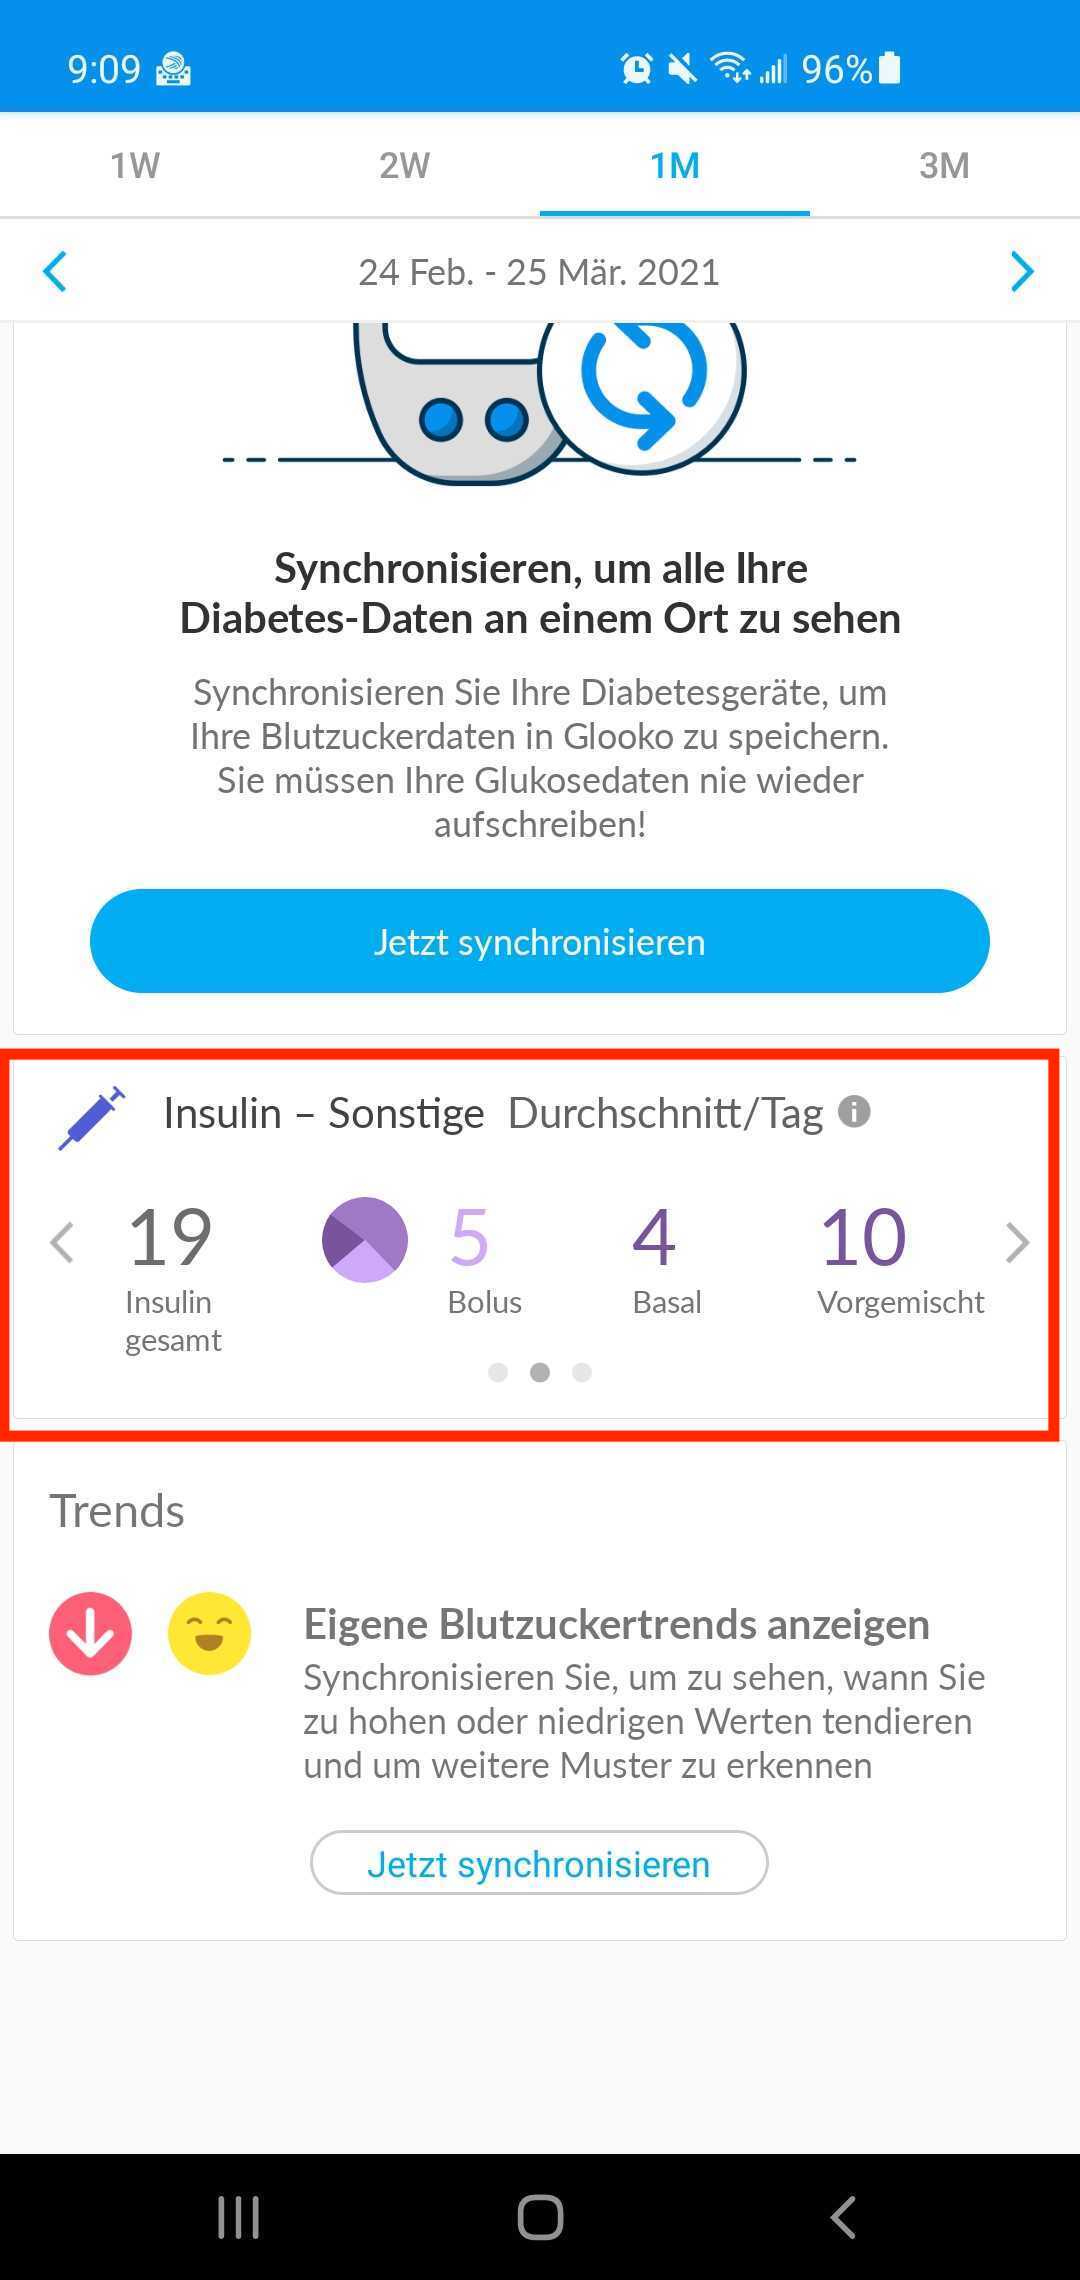 german-mobile-ptotherinsulin.jpg